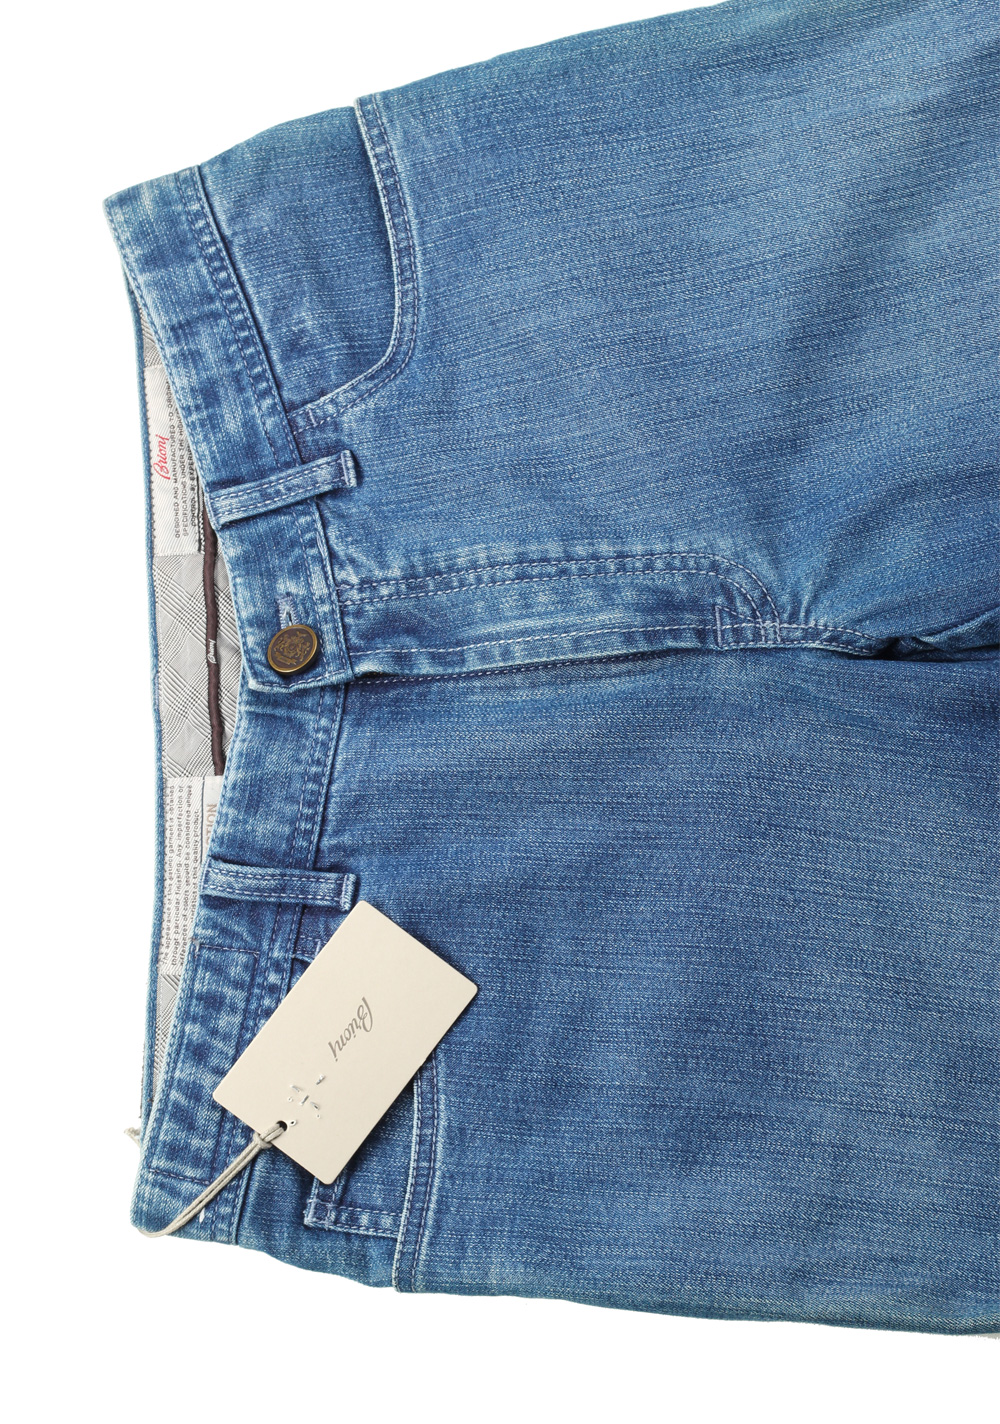 Brioni Blue Jeans Stelvio Trousers Size 48 / 32 U.S. | Costume Limité